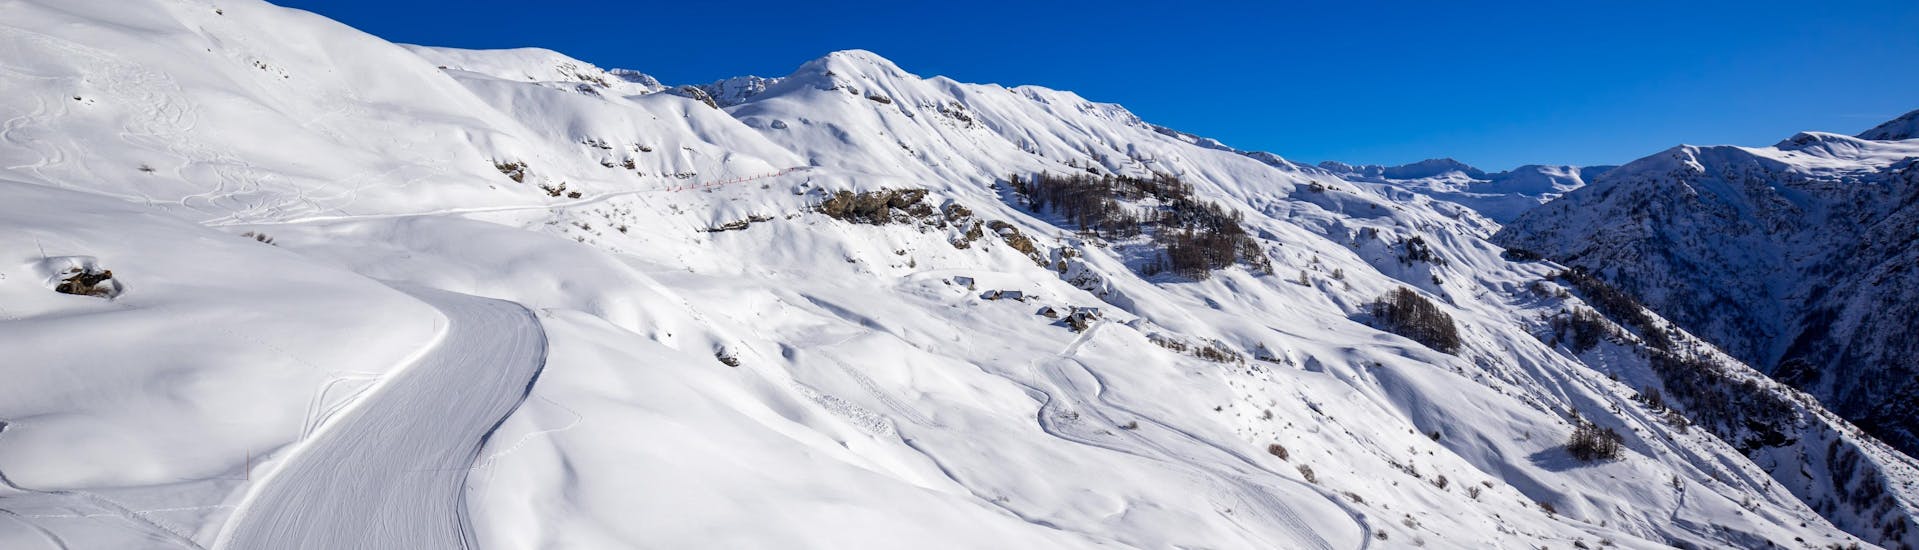 Vue sur le paysage de montagne enneigé de la station de ski Orcières Merlette 1850 en Haute-Alpes, où les écoles de ski locales proposent leurs cours de ski.